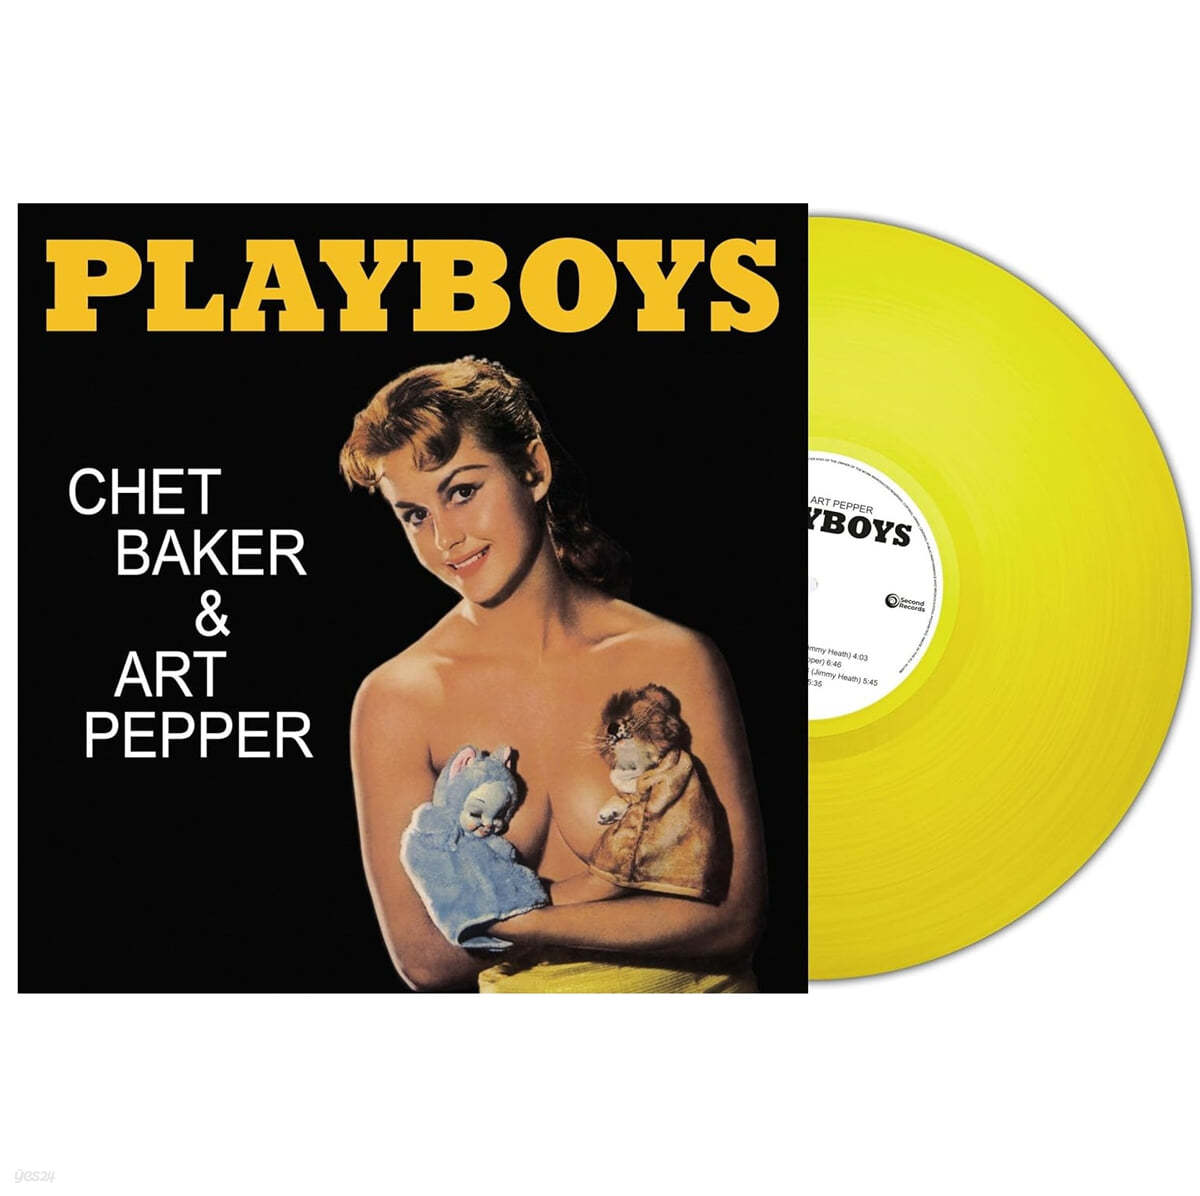 Chet Baker & Art Pepper (쳇 베이커 & 아트 페퍼) - Playboys [옐로우 컬러 LP]